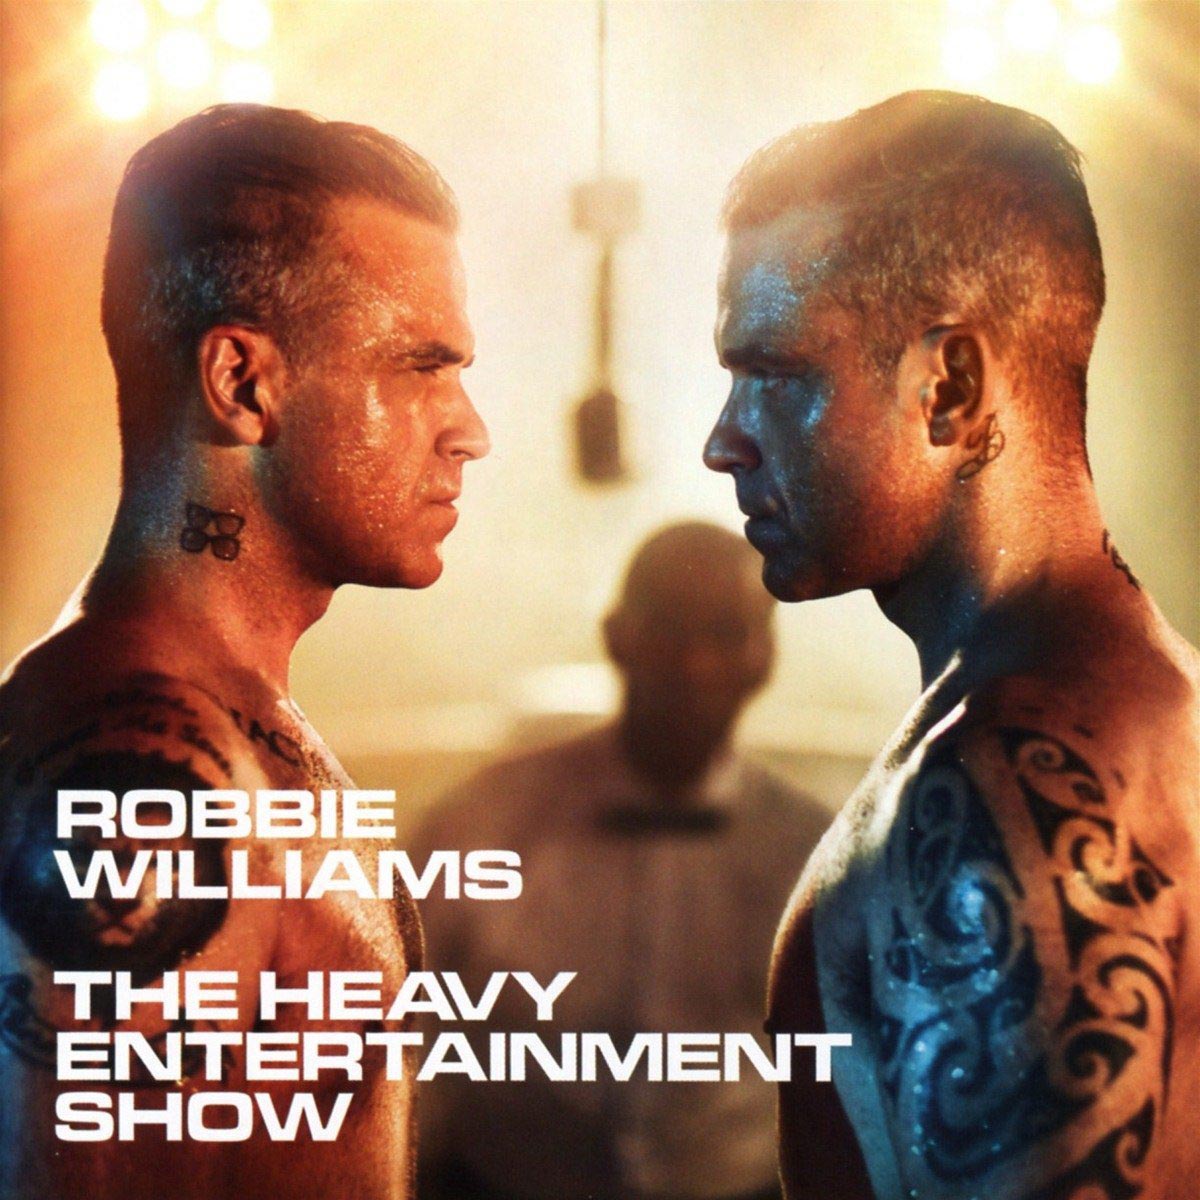 Robbie Williams: The heavy entertainment show, la portada del disco